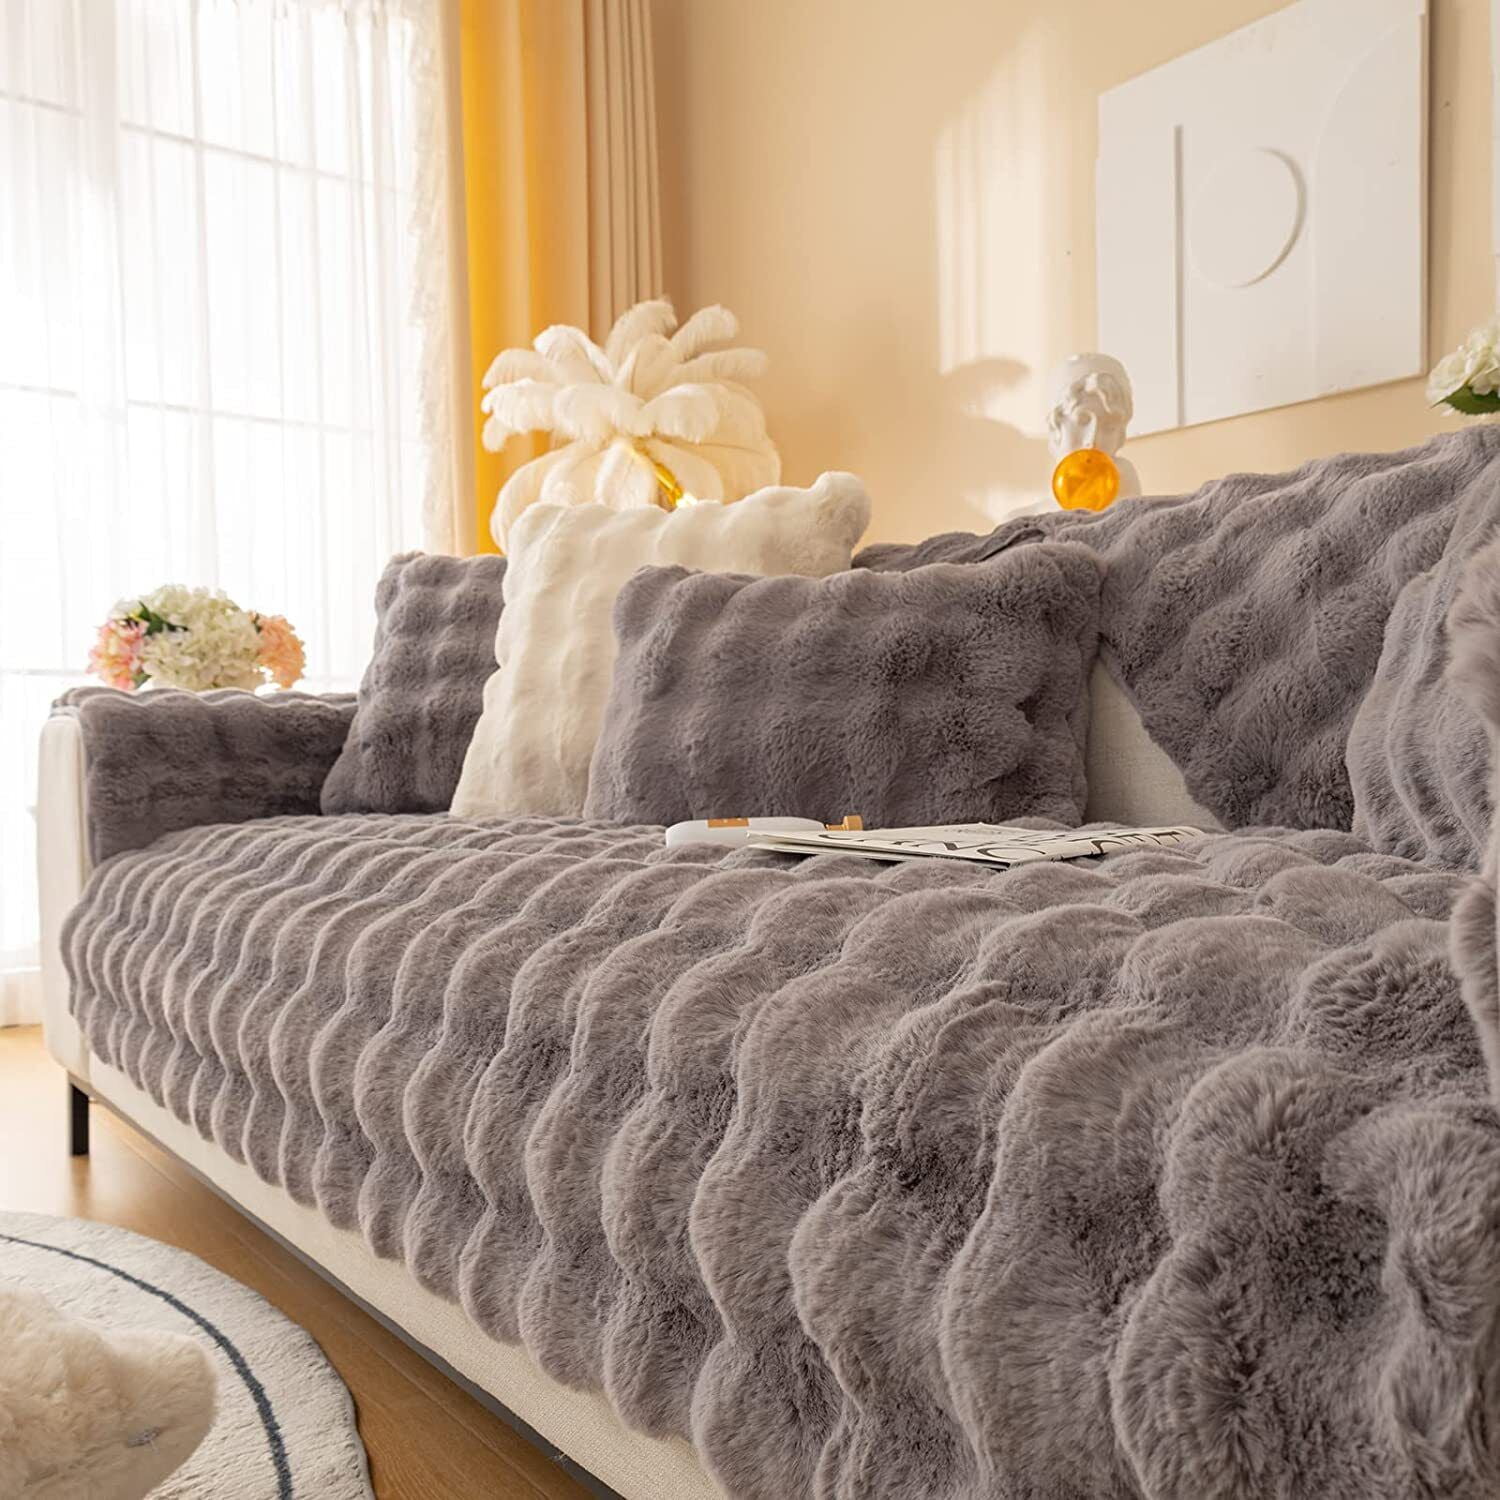 EJWQWQE Thick Rabbit Plush Sofa Cushion, New Non-Slip Sofa Cover Super Soft  Faux Throw Couch Cushion Covers Furniture Protector (Sofa Cushion 70x210